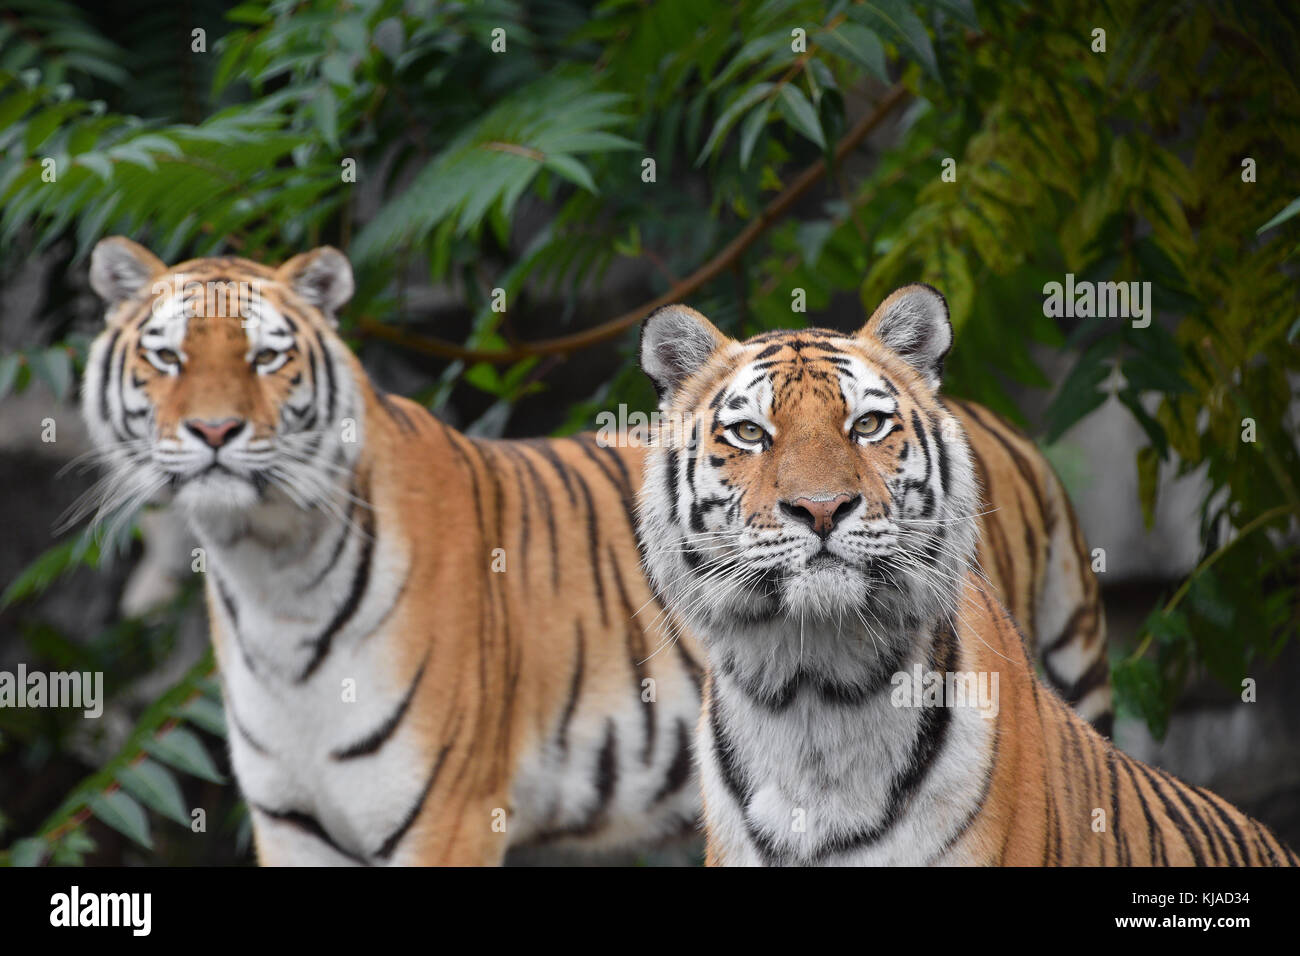 Close up front ritratto di due giovani donne (Amur siberian) tigers guardando fotocamera sulla foresta verde, sfondo a basso angolo di visione Foto Stock